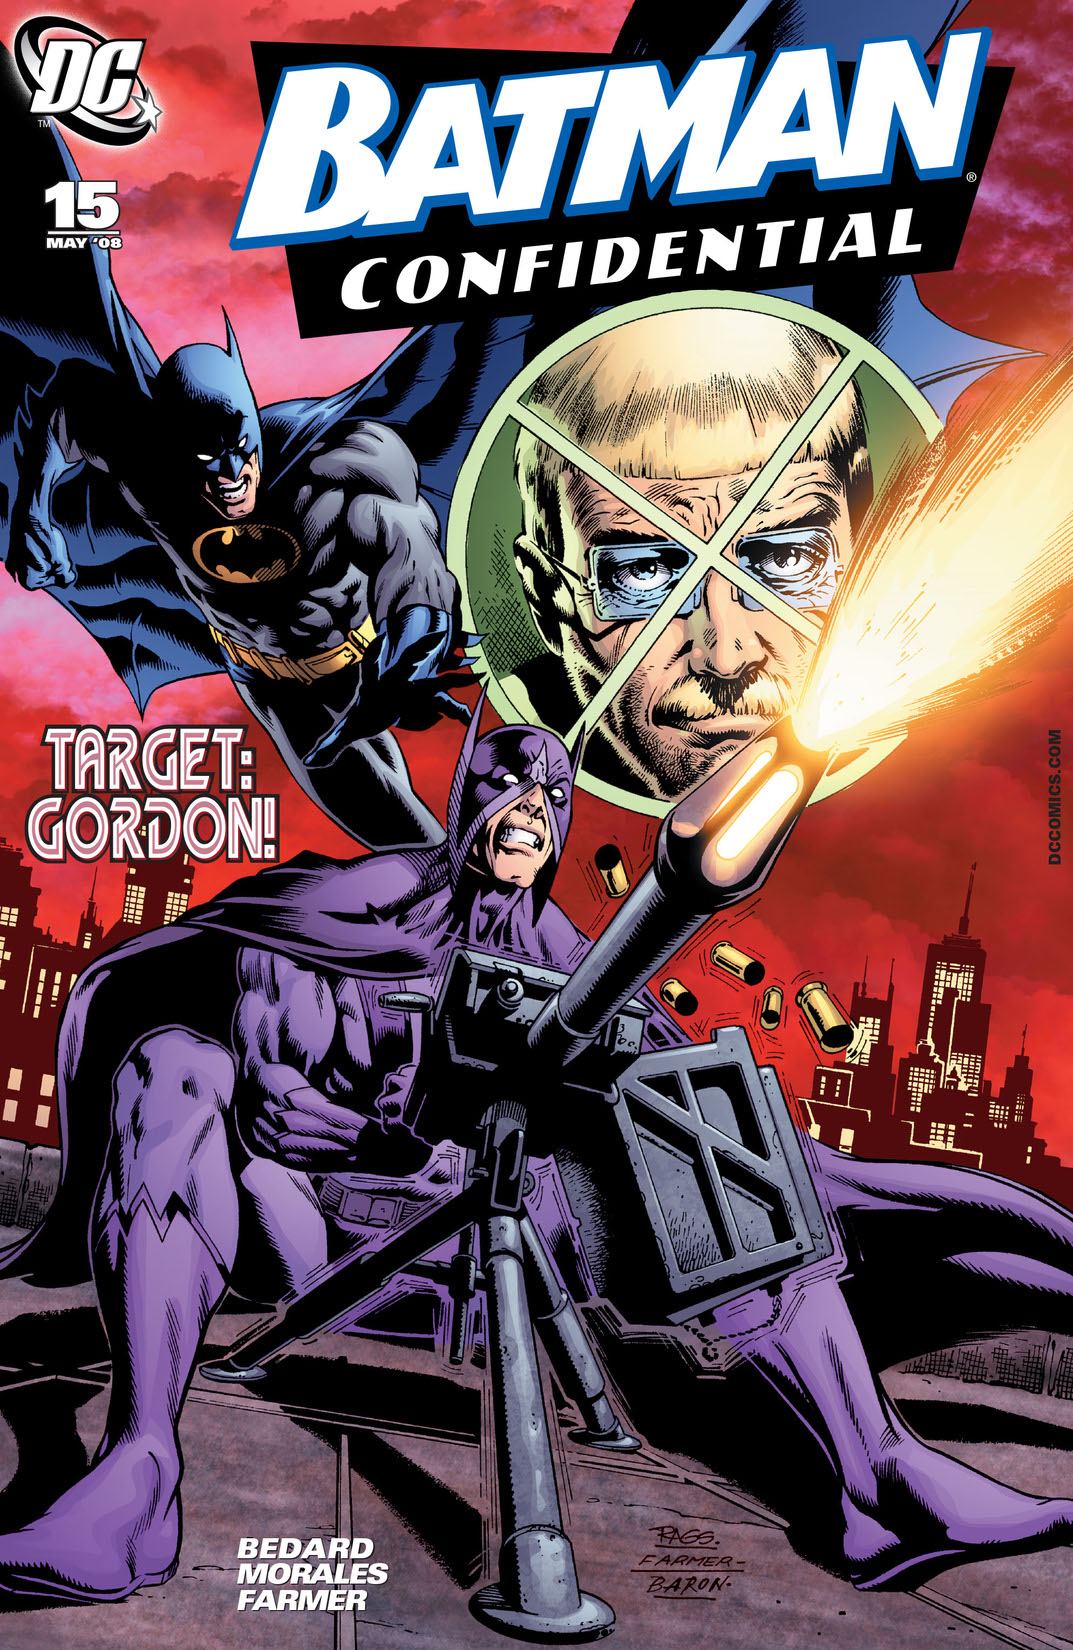 Batman Confidential #15 preview images